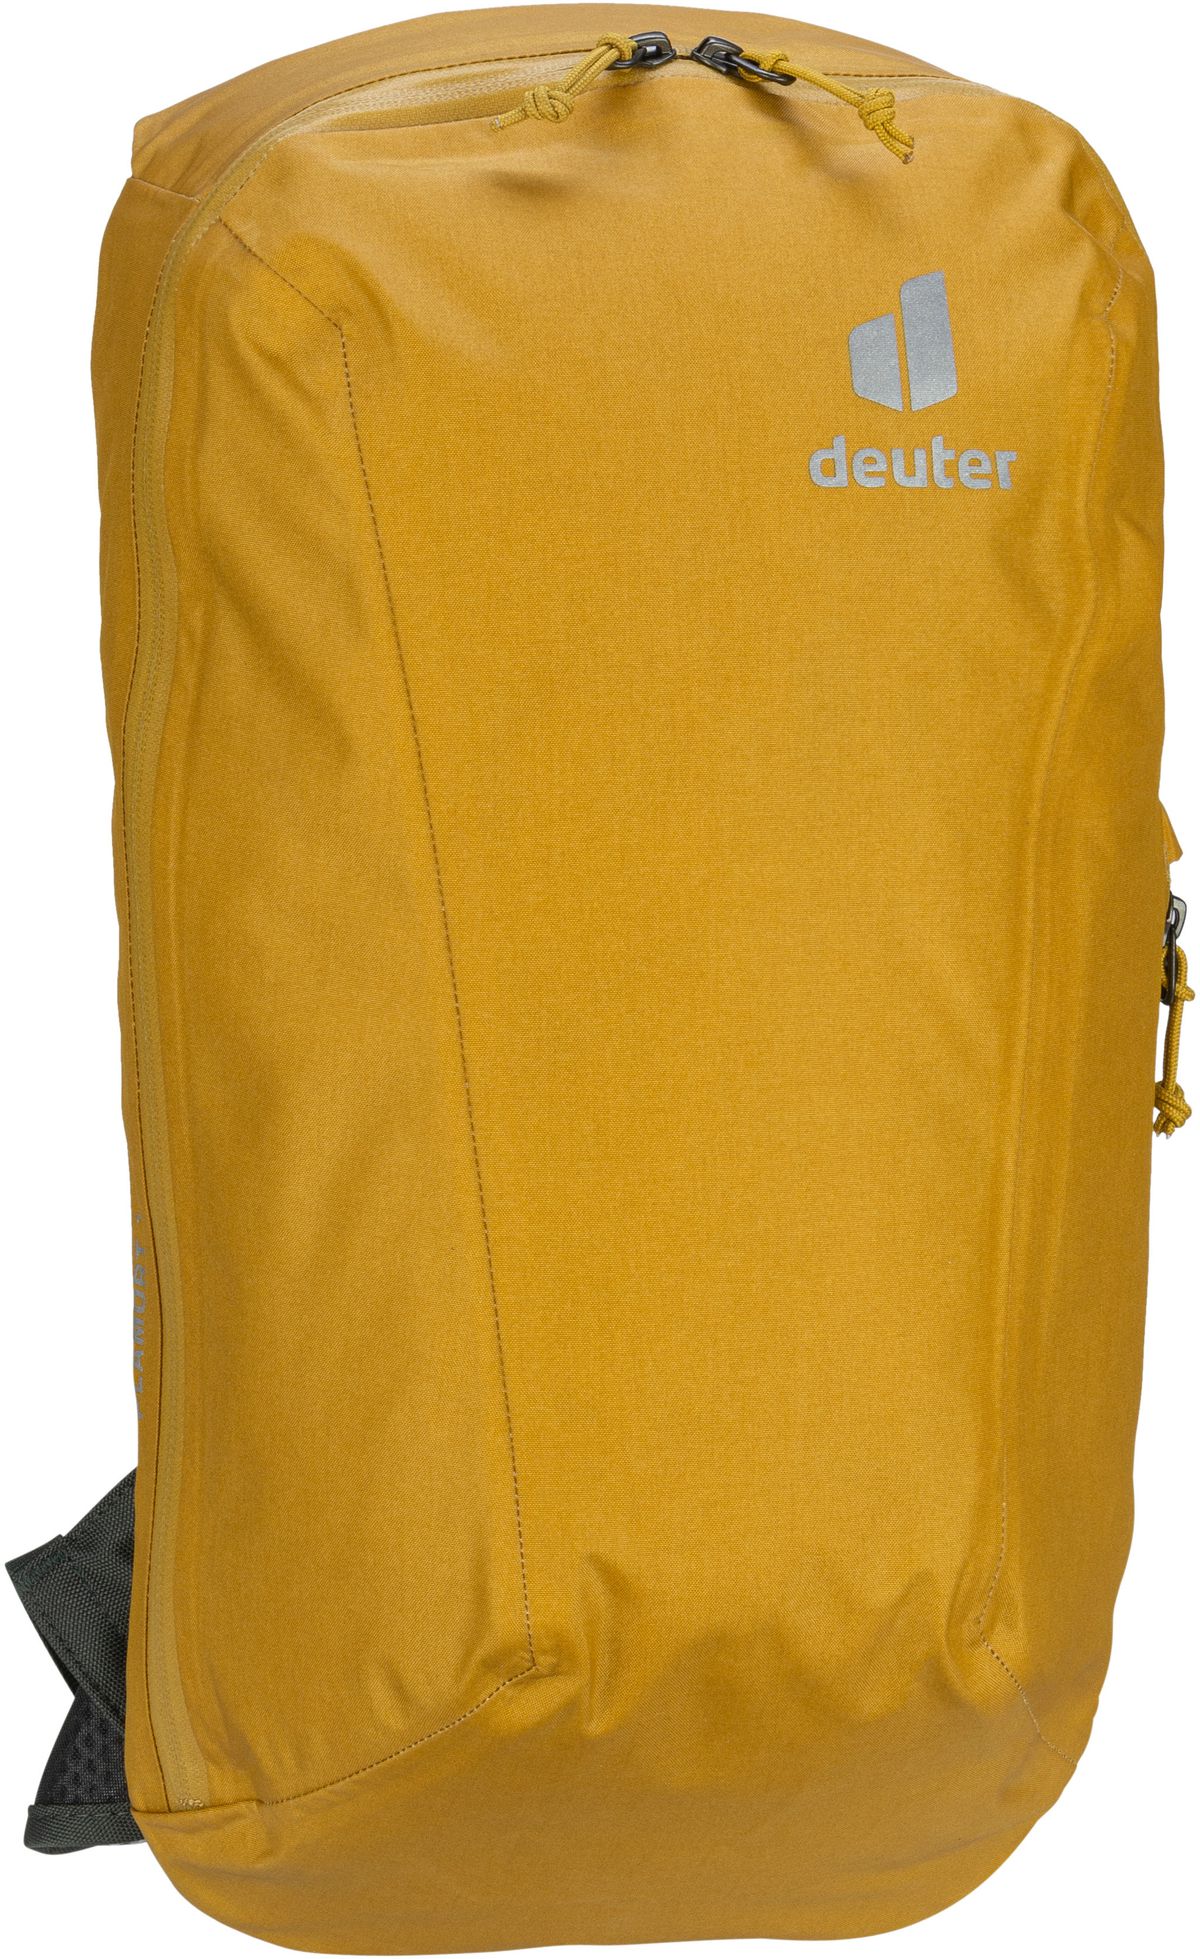 Deuter Plamort 12  in Gelb (12 Liter), Rucksack / Backpack von Deuter